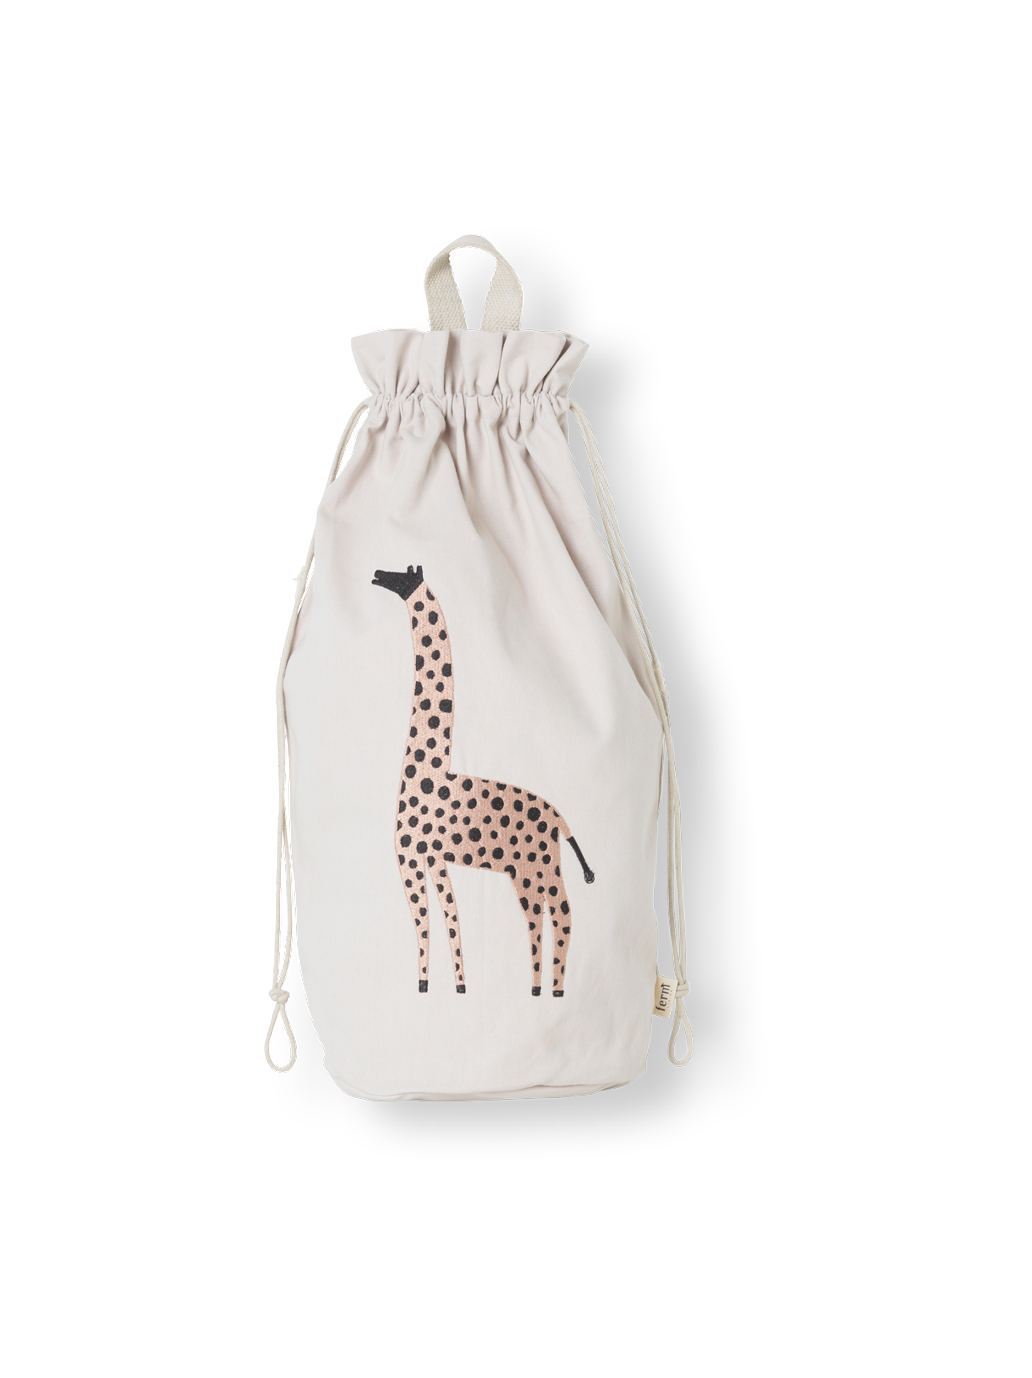 Cotton bag with Safari embroidery